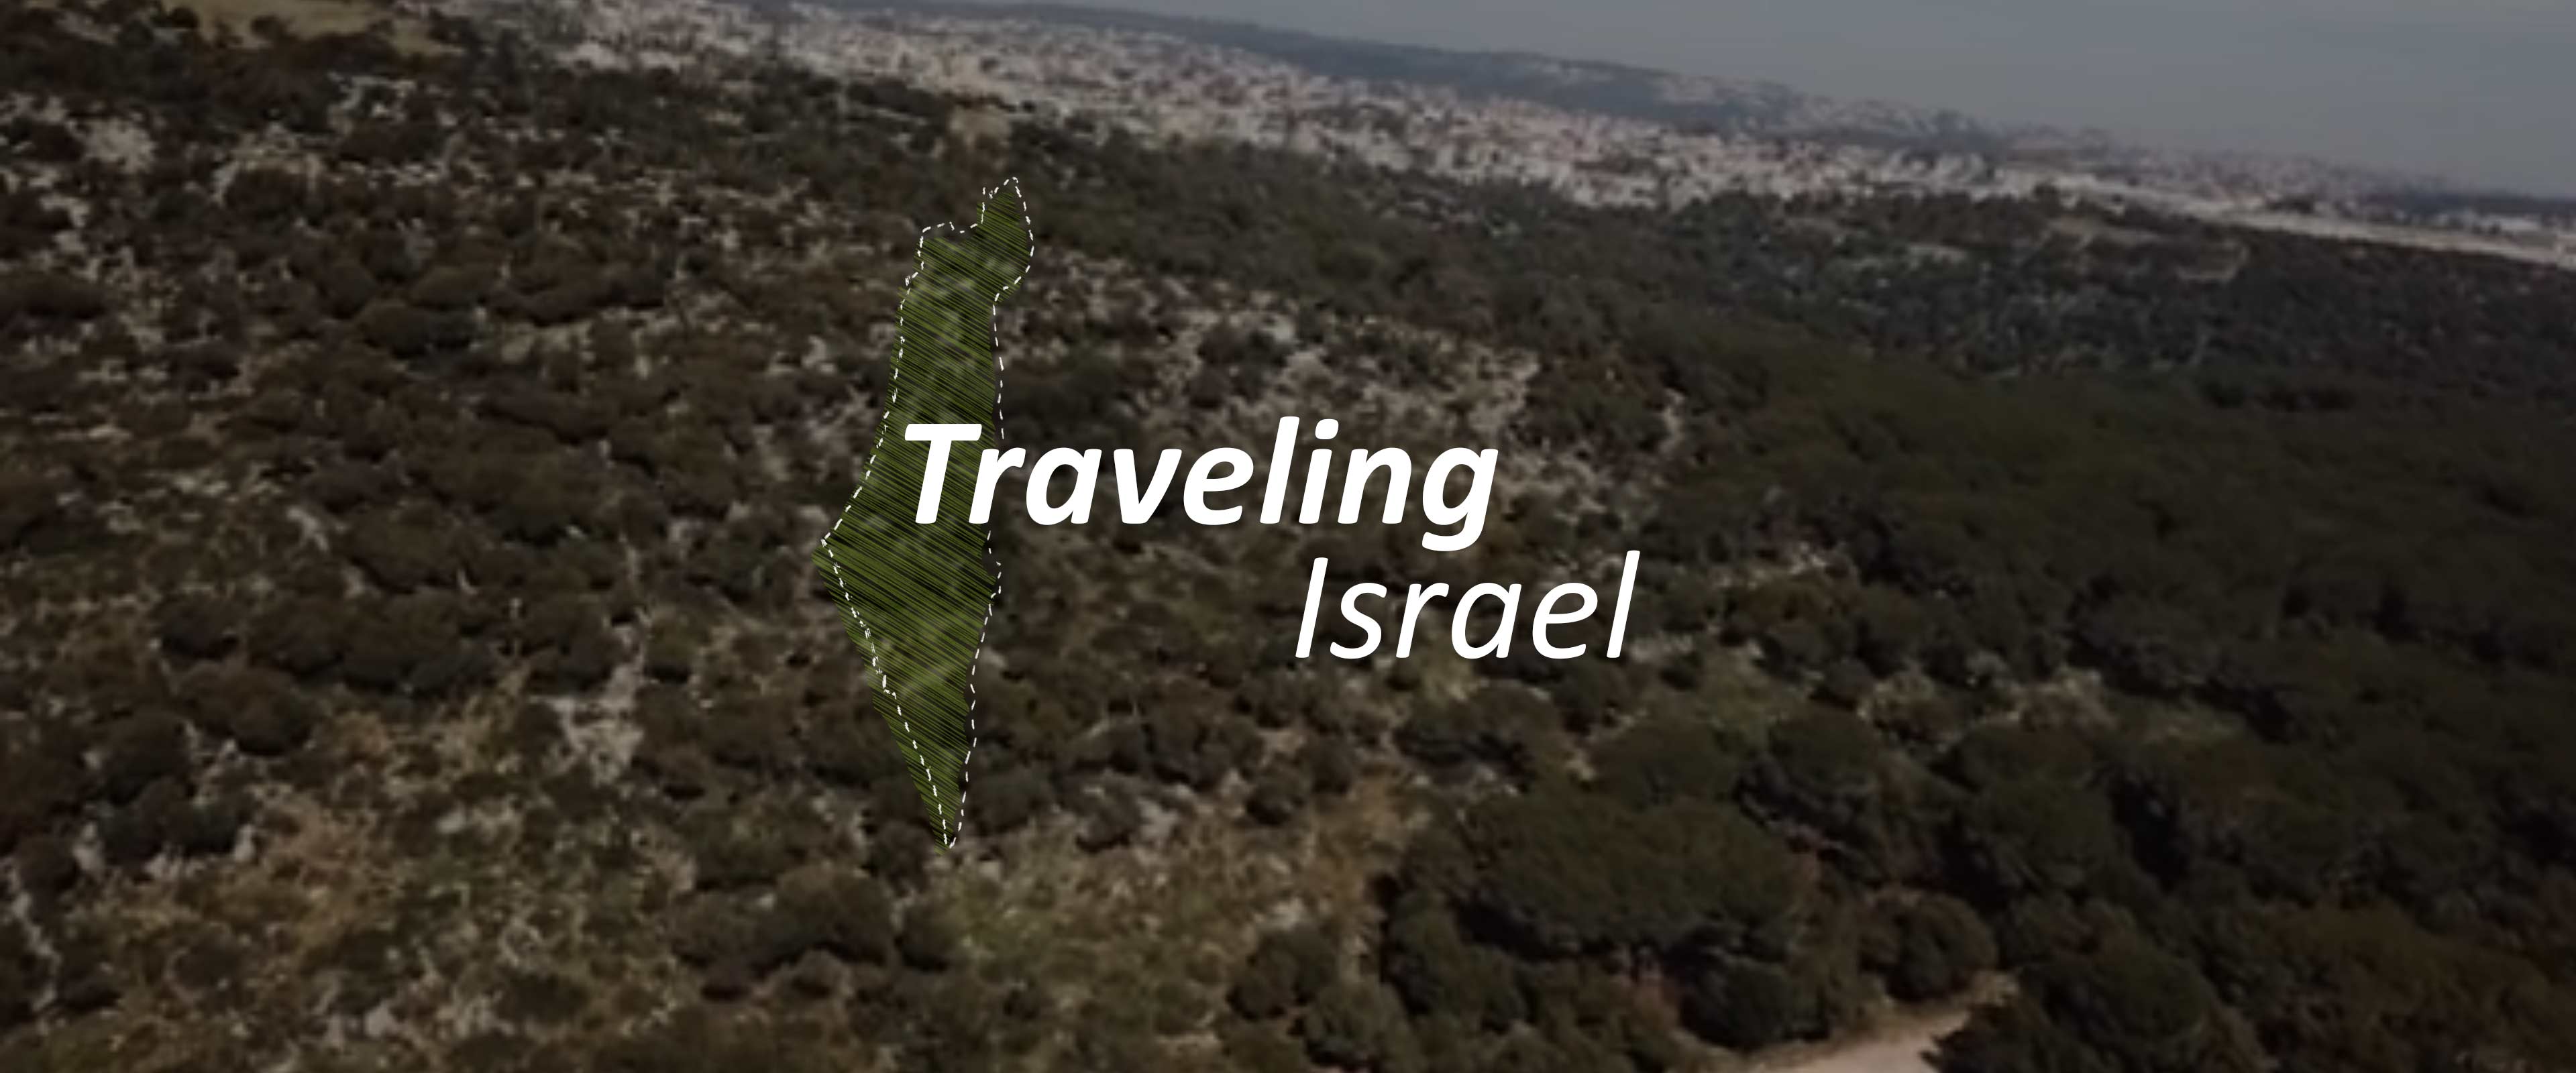 מטיילים בישראל | Traveling Israel